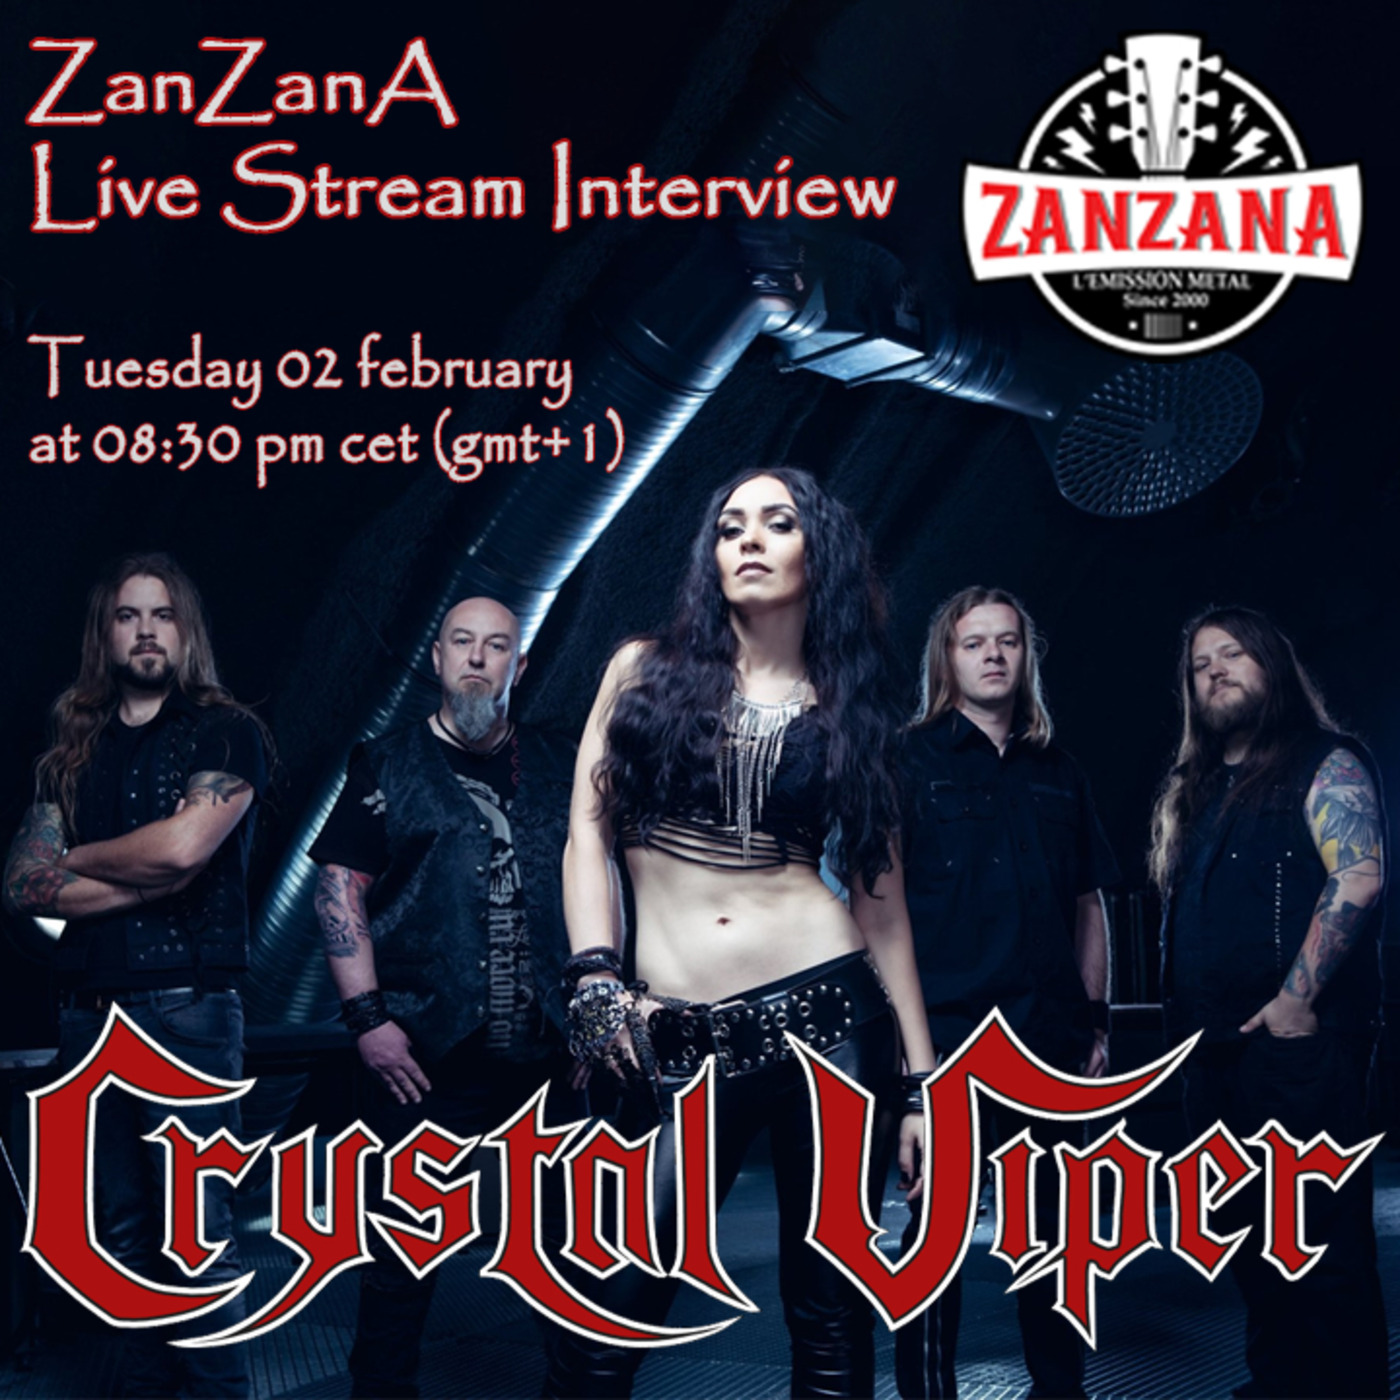 Marta Gabriel (CRYSTAL VIPER), ”The Cult” interview - ZanZanA Live Stream Metal Interview - Mardi 02 février 2021